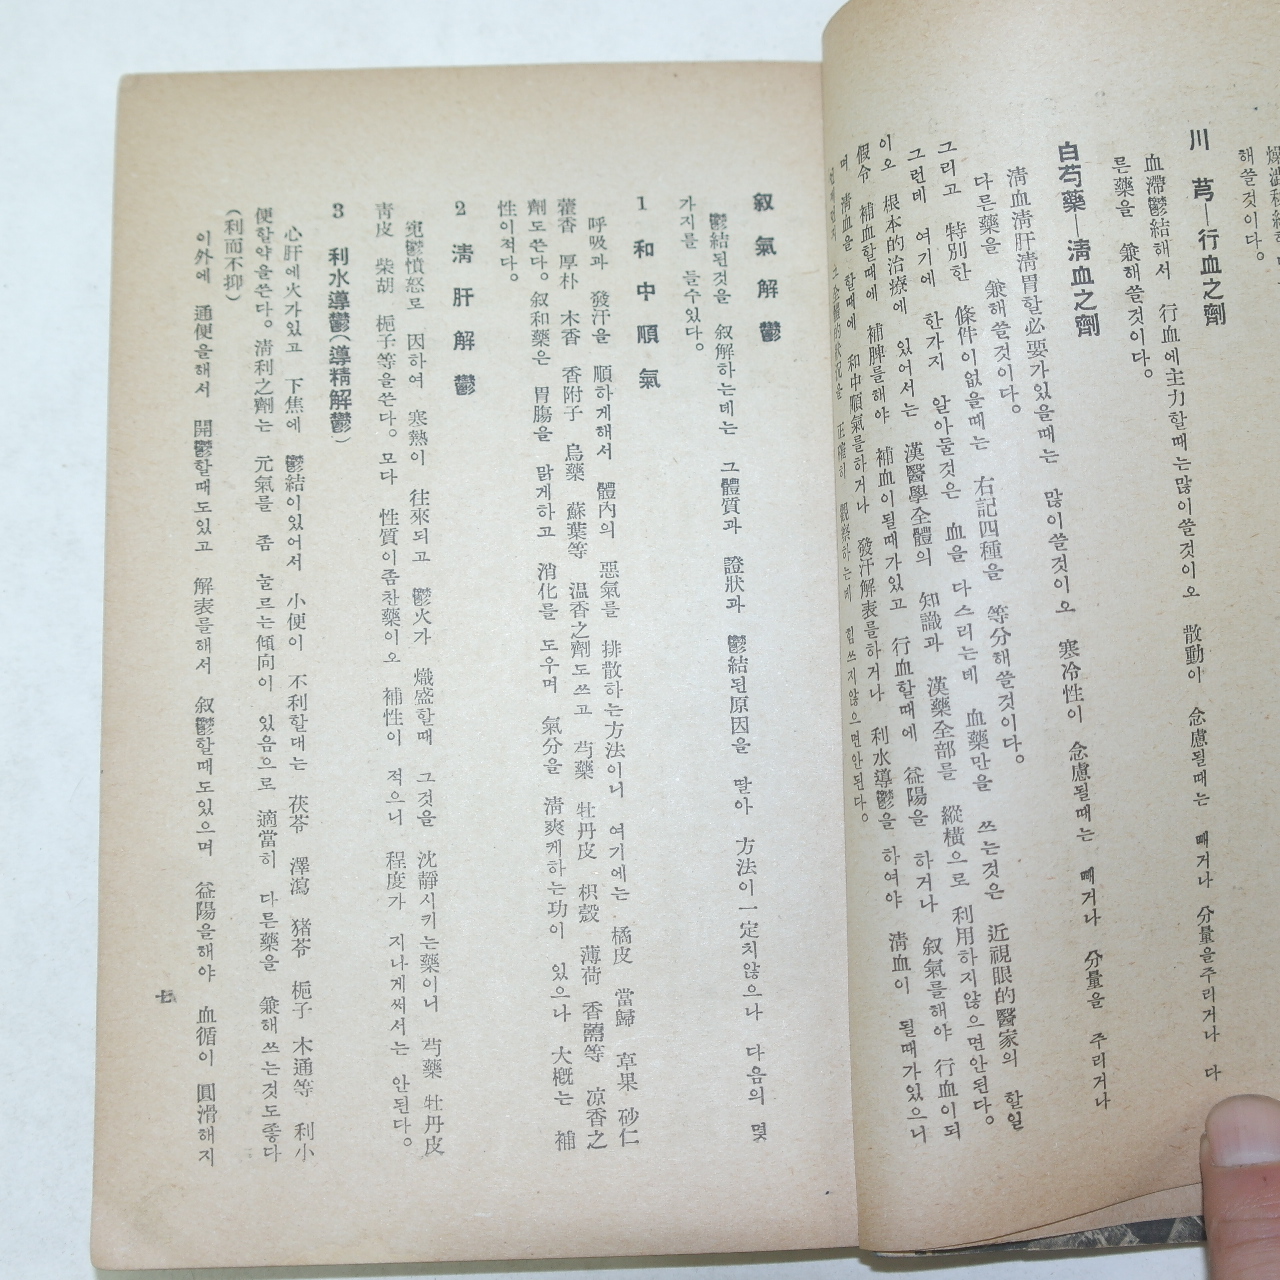 1941년 경성간행 조헌영(趙憲泳)의서 부인병치료법(婦人病治療法) 1책완질